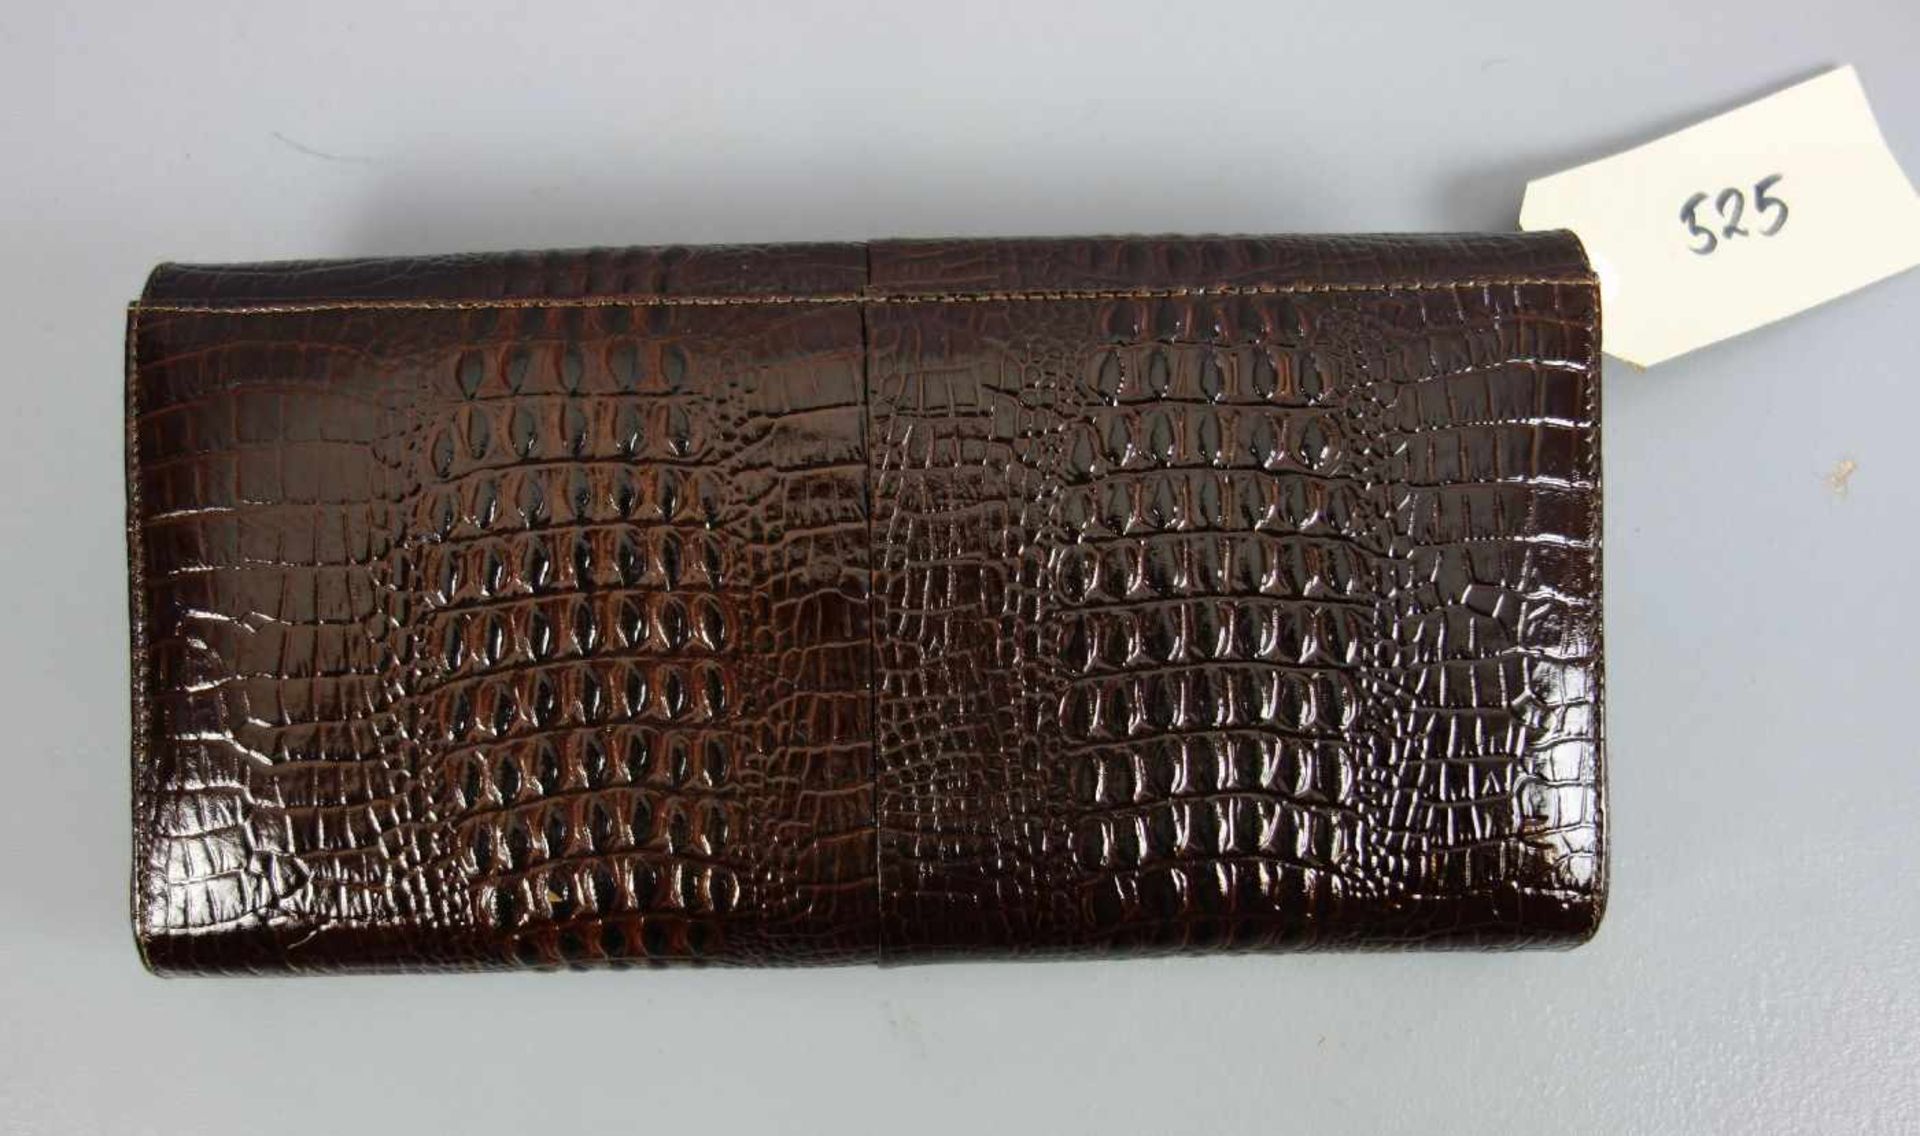 KROKO - HANDTASCHE / CLUTCH, 1960er Jahre; dunkelbraunes Krokodilleder. Schmalrechteckige Form mit - Bild 3 aus 3